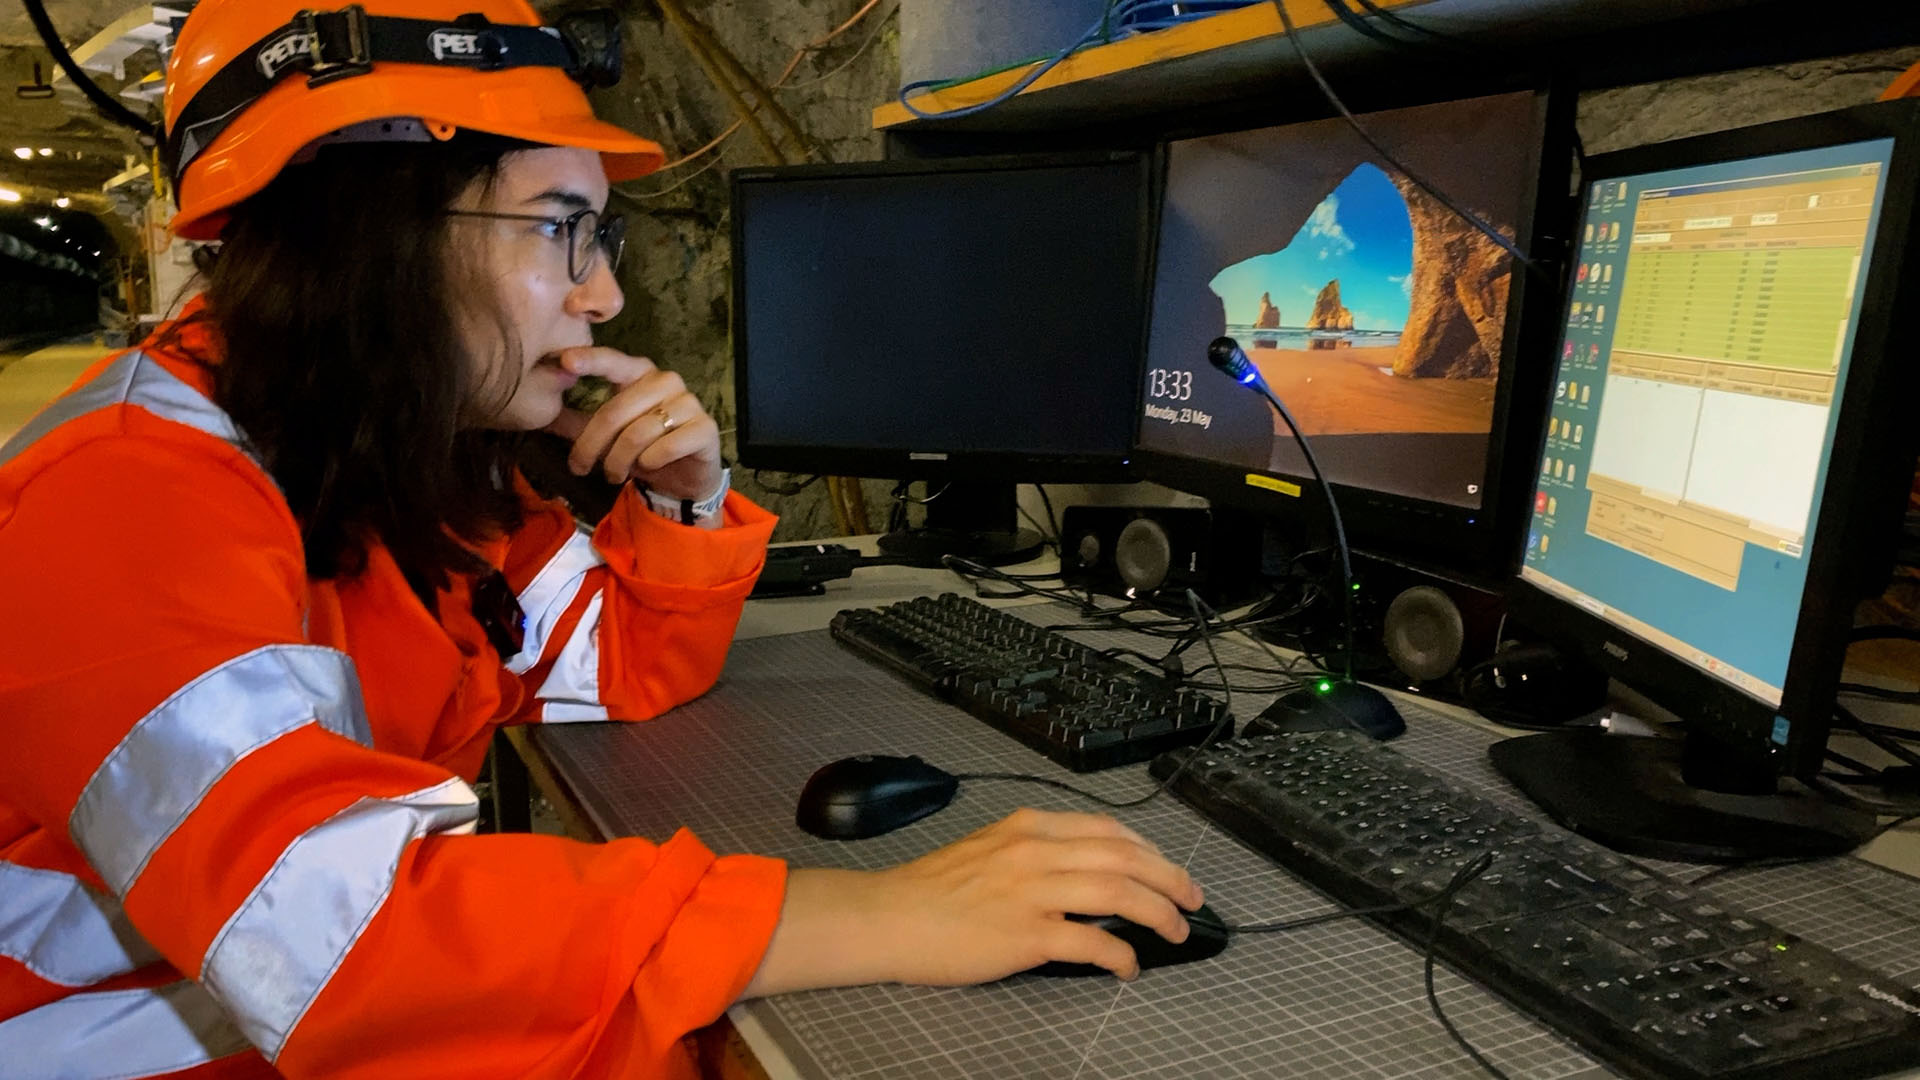 Eine Frau checkt in einem unterirdischen Felslabor auf einem Bildschirm einige Einstellungen.